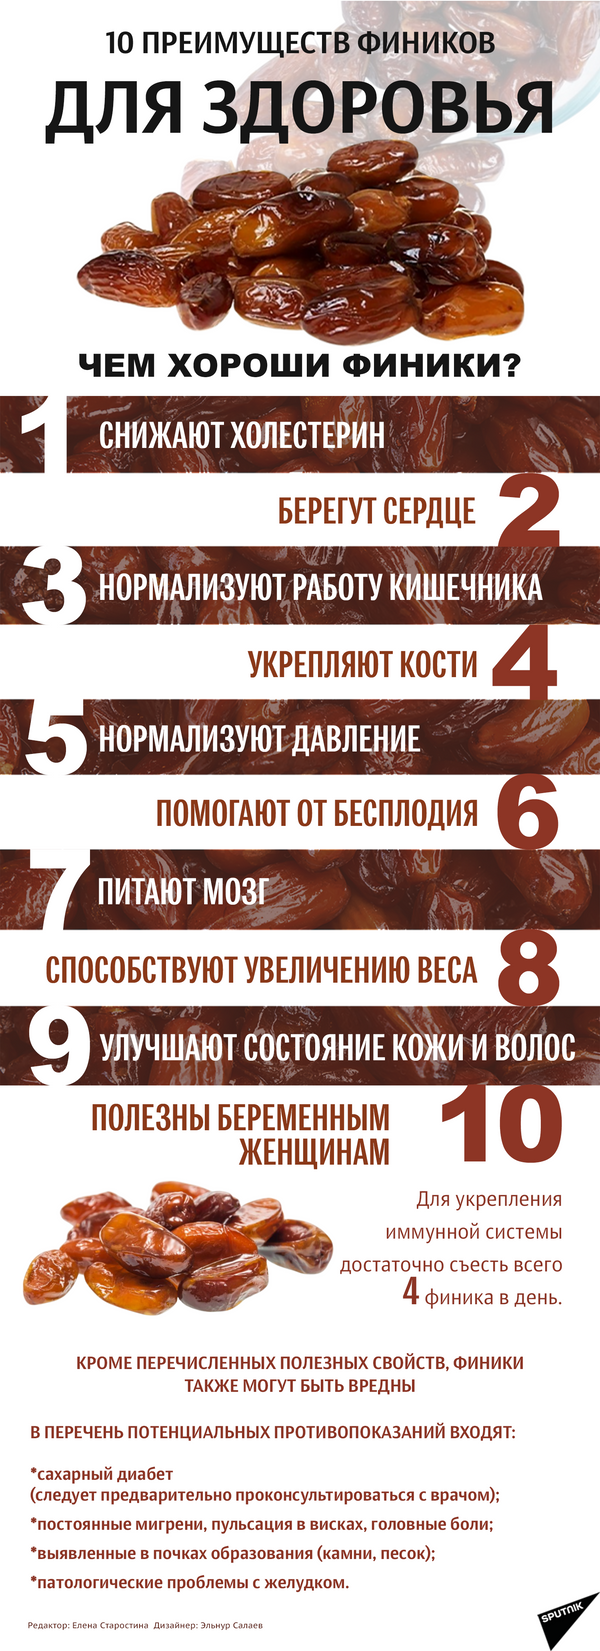 Десять причин есть финики каждый день - Sputnik Абхазия